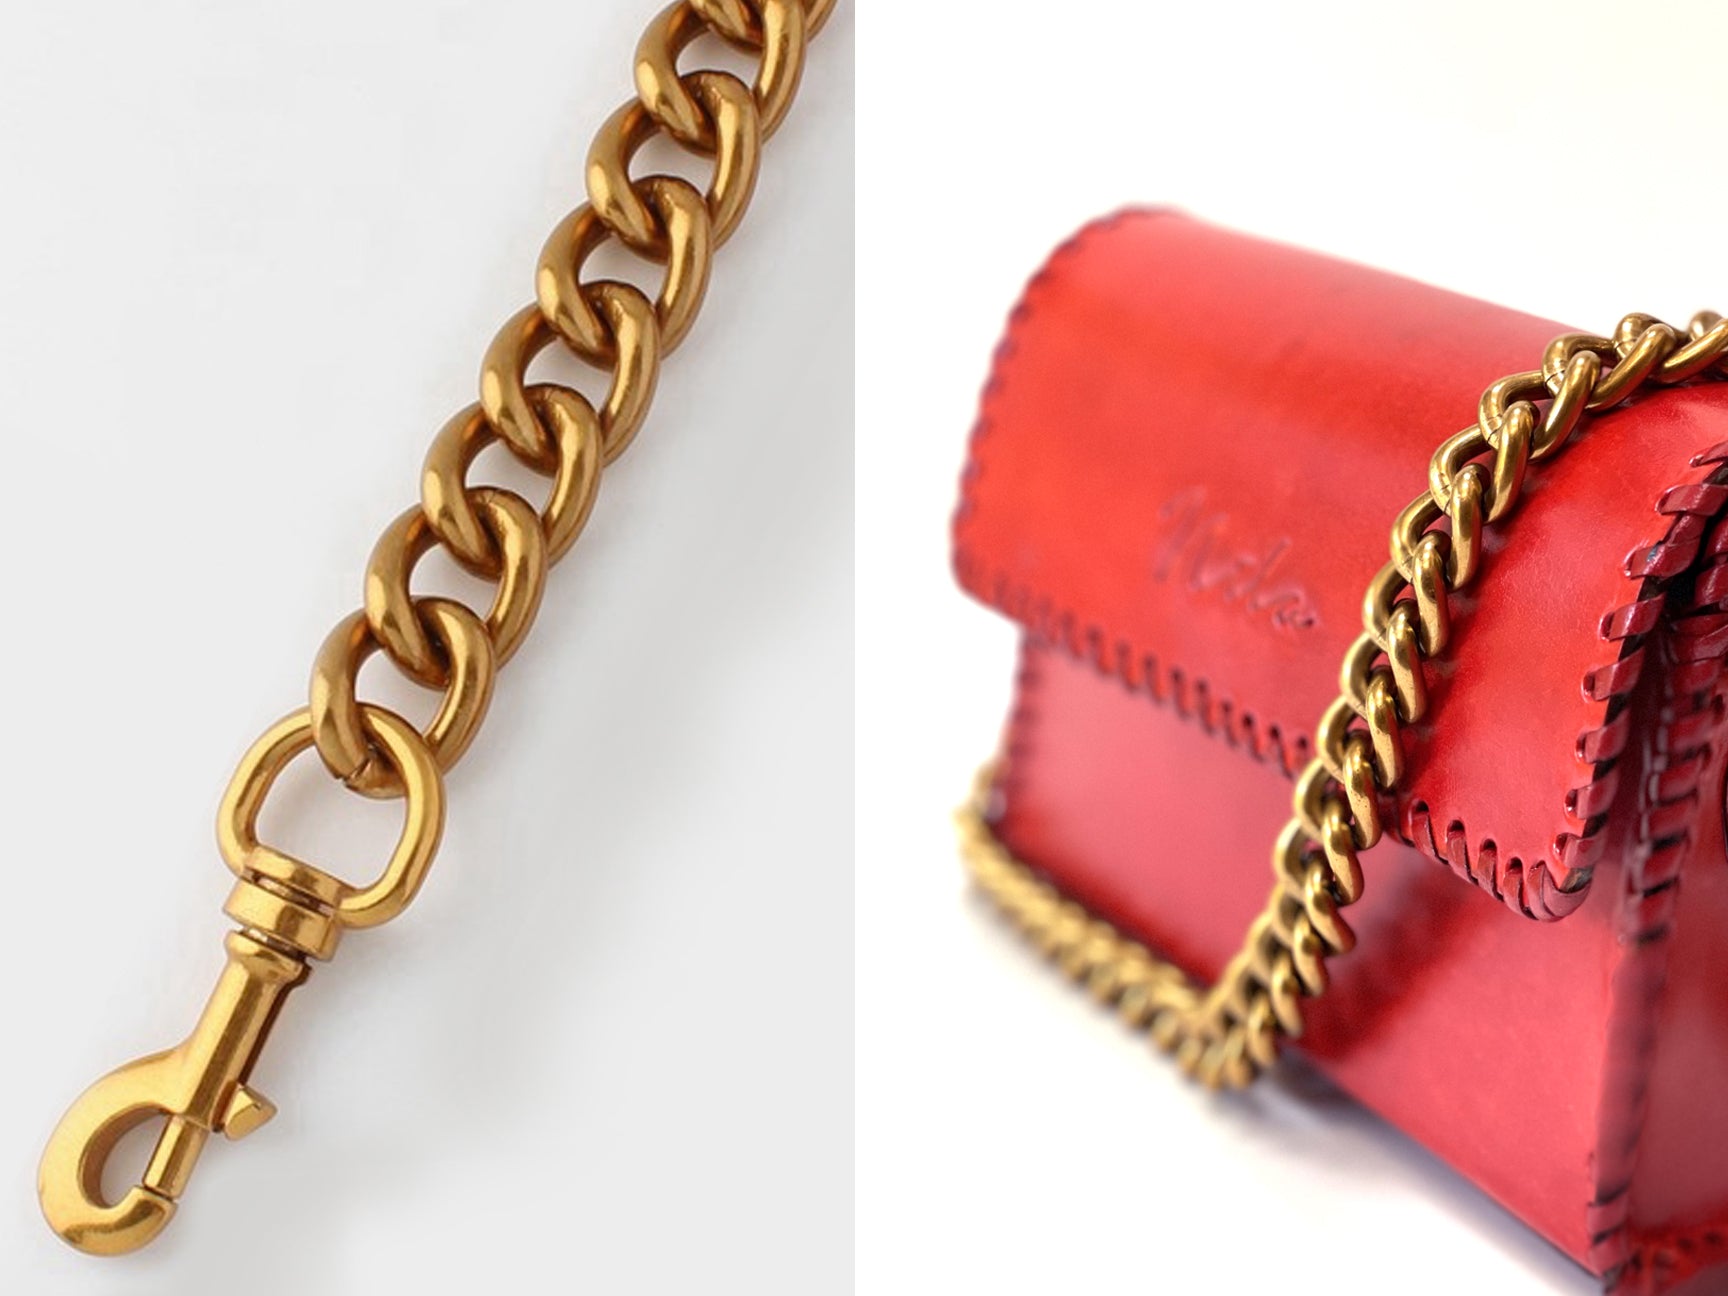 Bagssmartversatile Metal Bag Chain Strap - 60cm-120cm Ancient Gold  Replacement